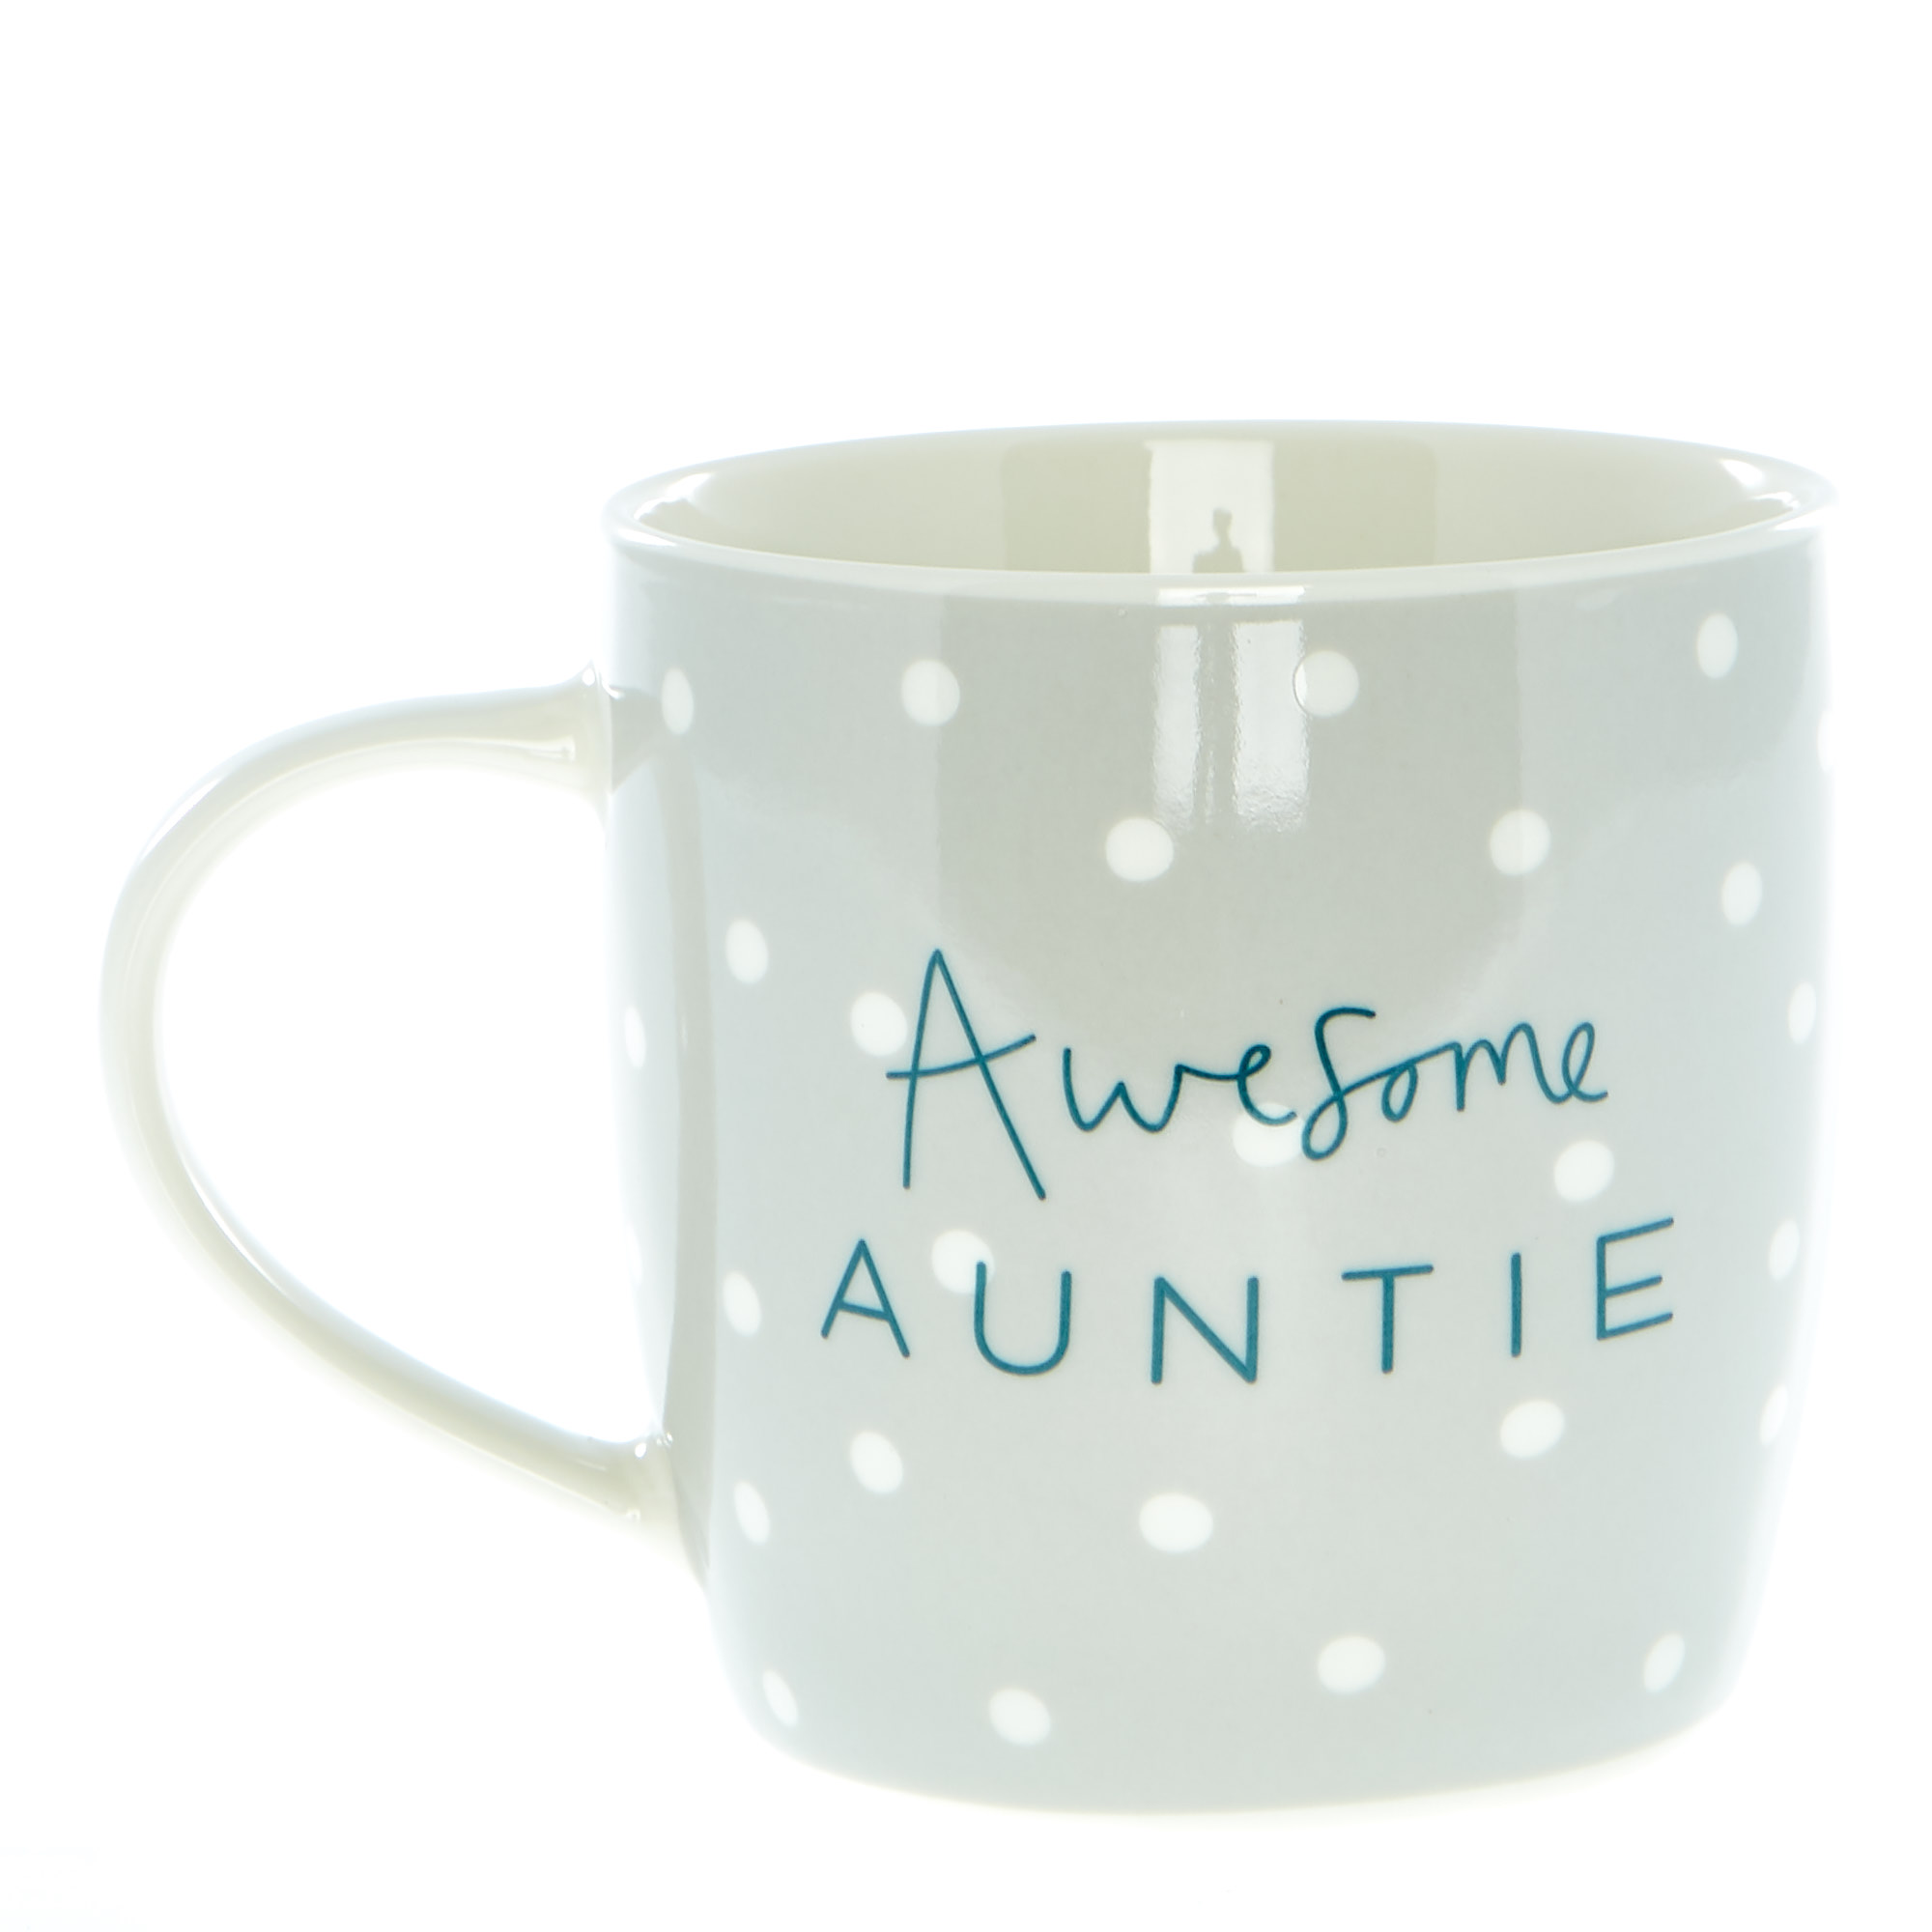 Awesome Auntie Mug